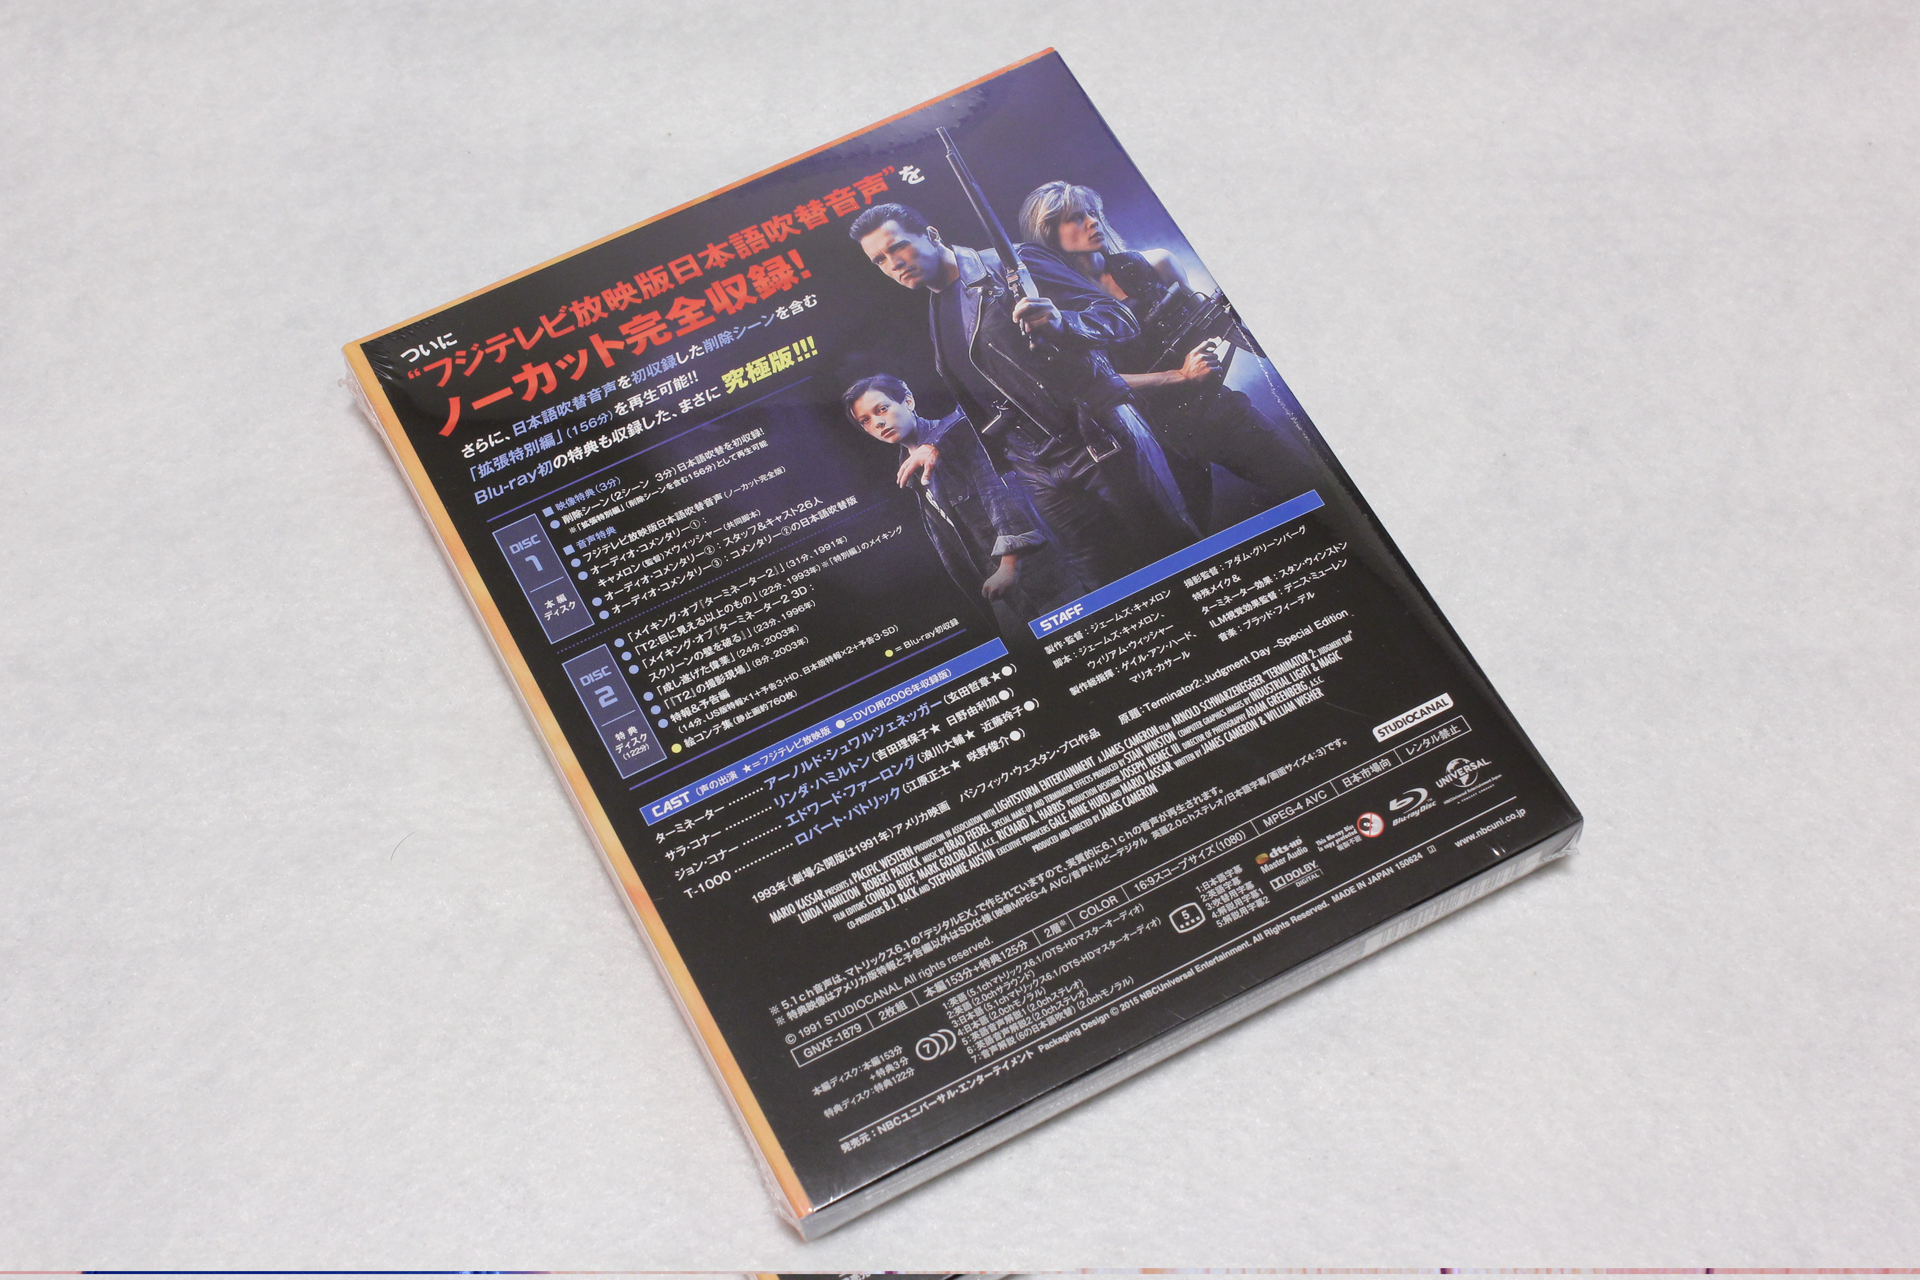 ブルーレイ「ターミネーター2 特別編 アルティメット・エディション」が届いたので記念写真[BD][Blu-ray] | 録画地獄